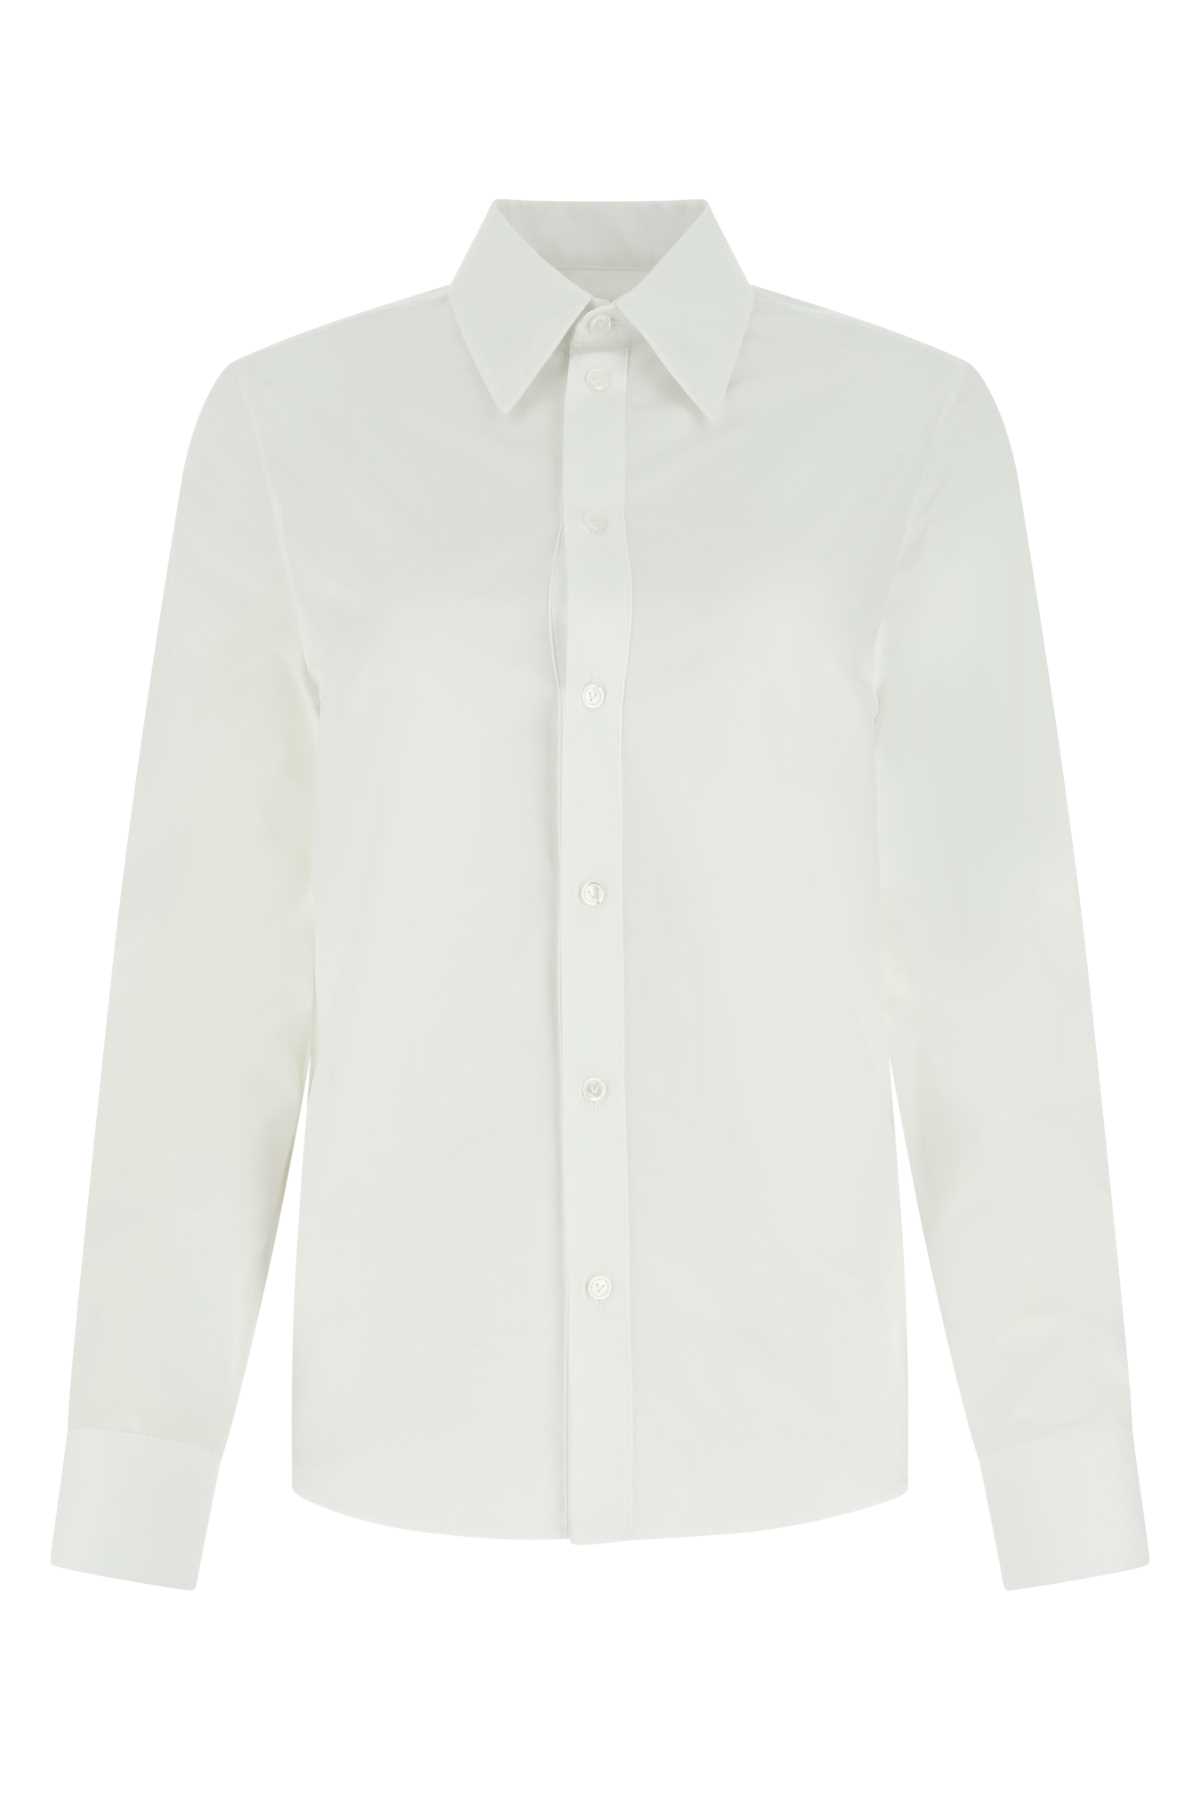 Bottega Veneta White Poplin Shirt